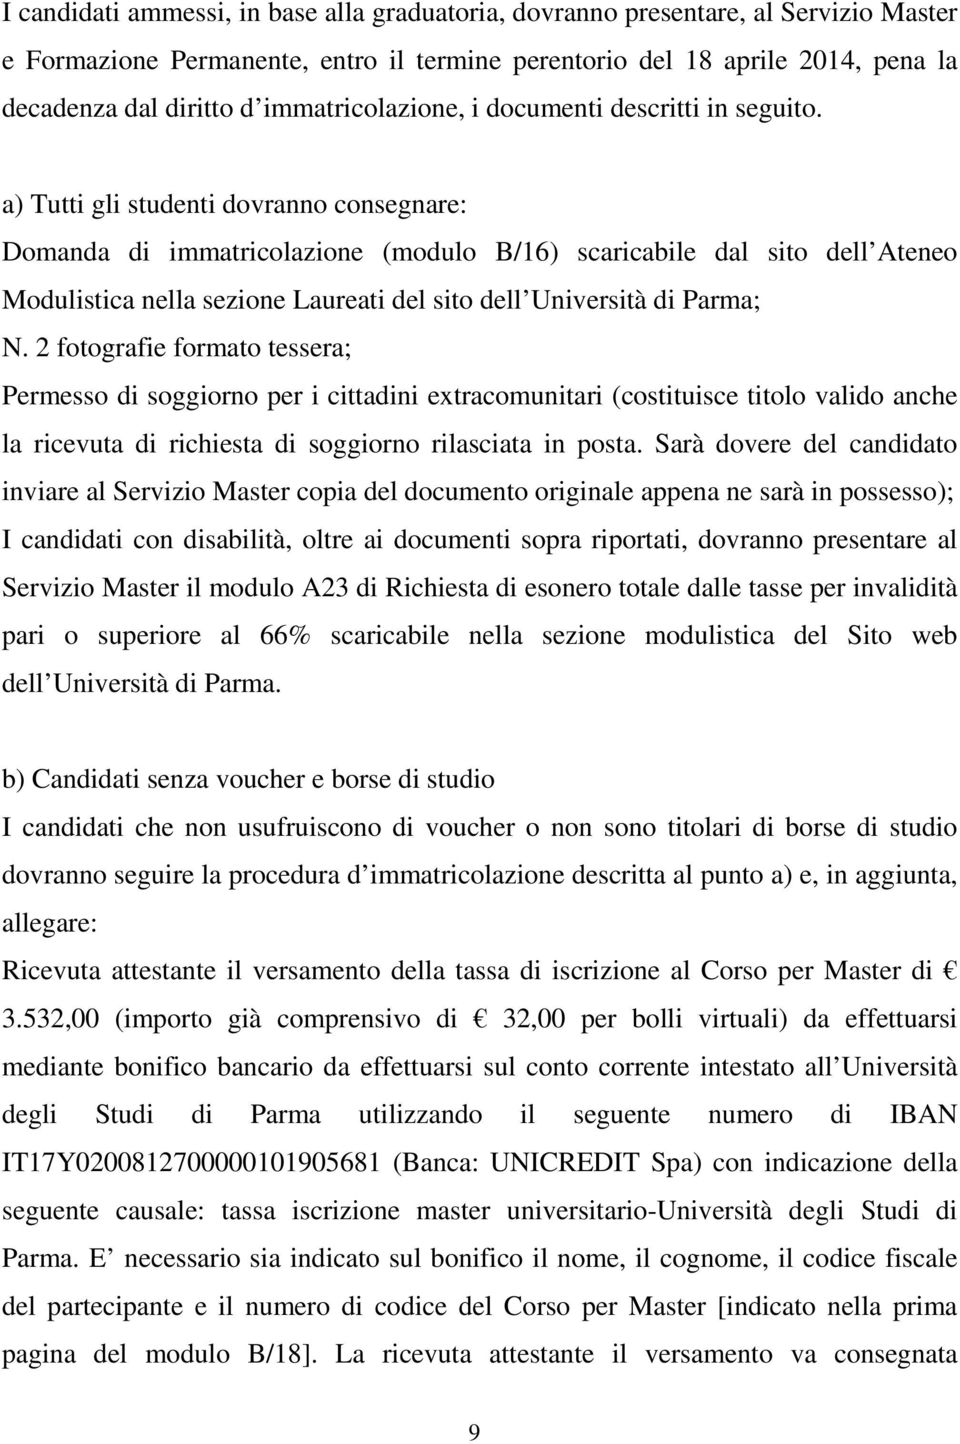 a) Tutti gli studenti dovranno consegnare: Domanda di immatricolazione (modulo B/16) scaricabile dal sito dell Ateneo Modulistica nella sezione Laureati del sito dell Università di Parma; N.